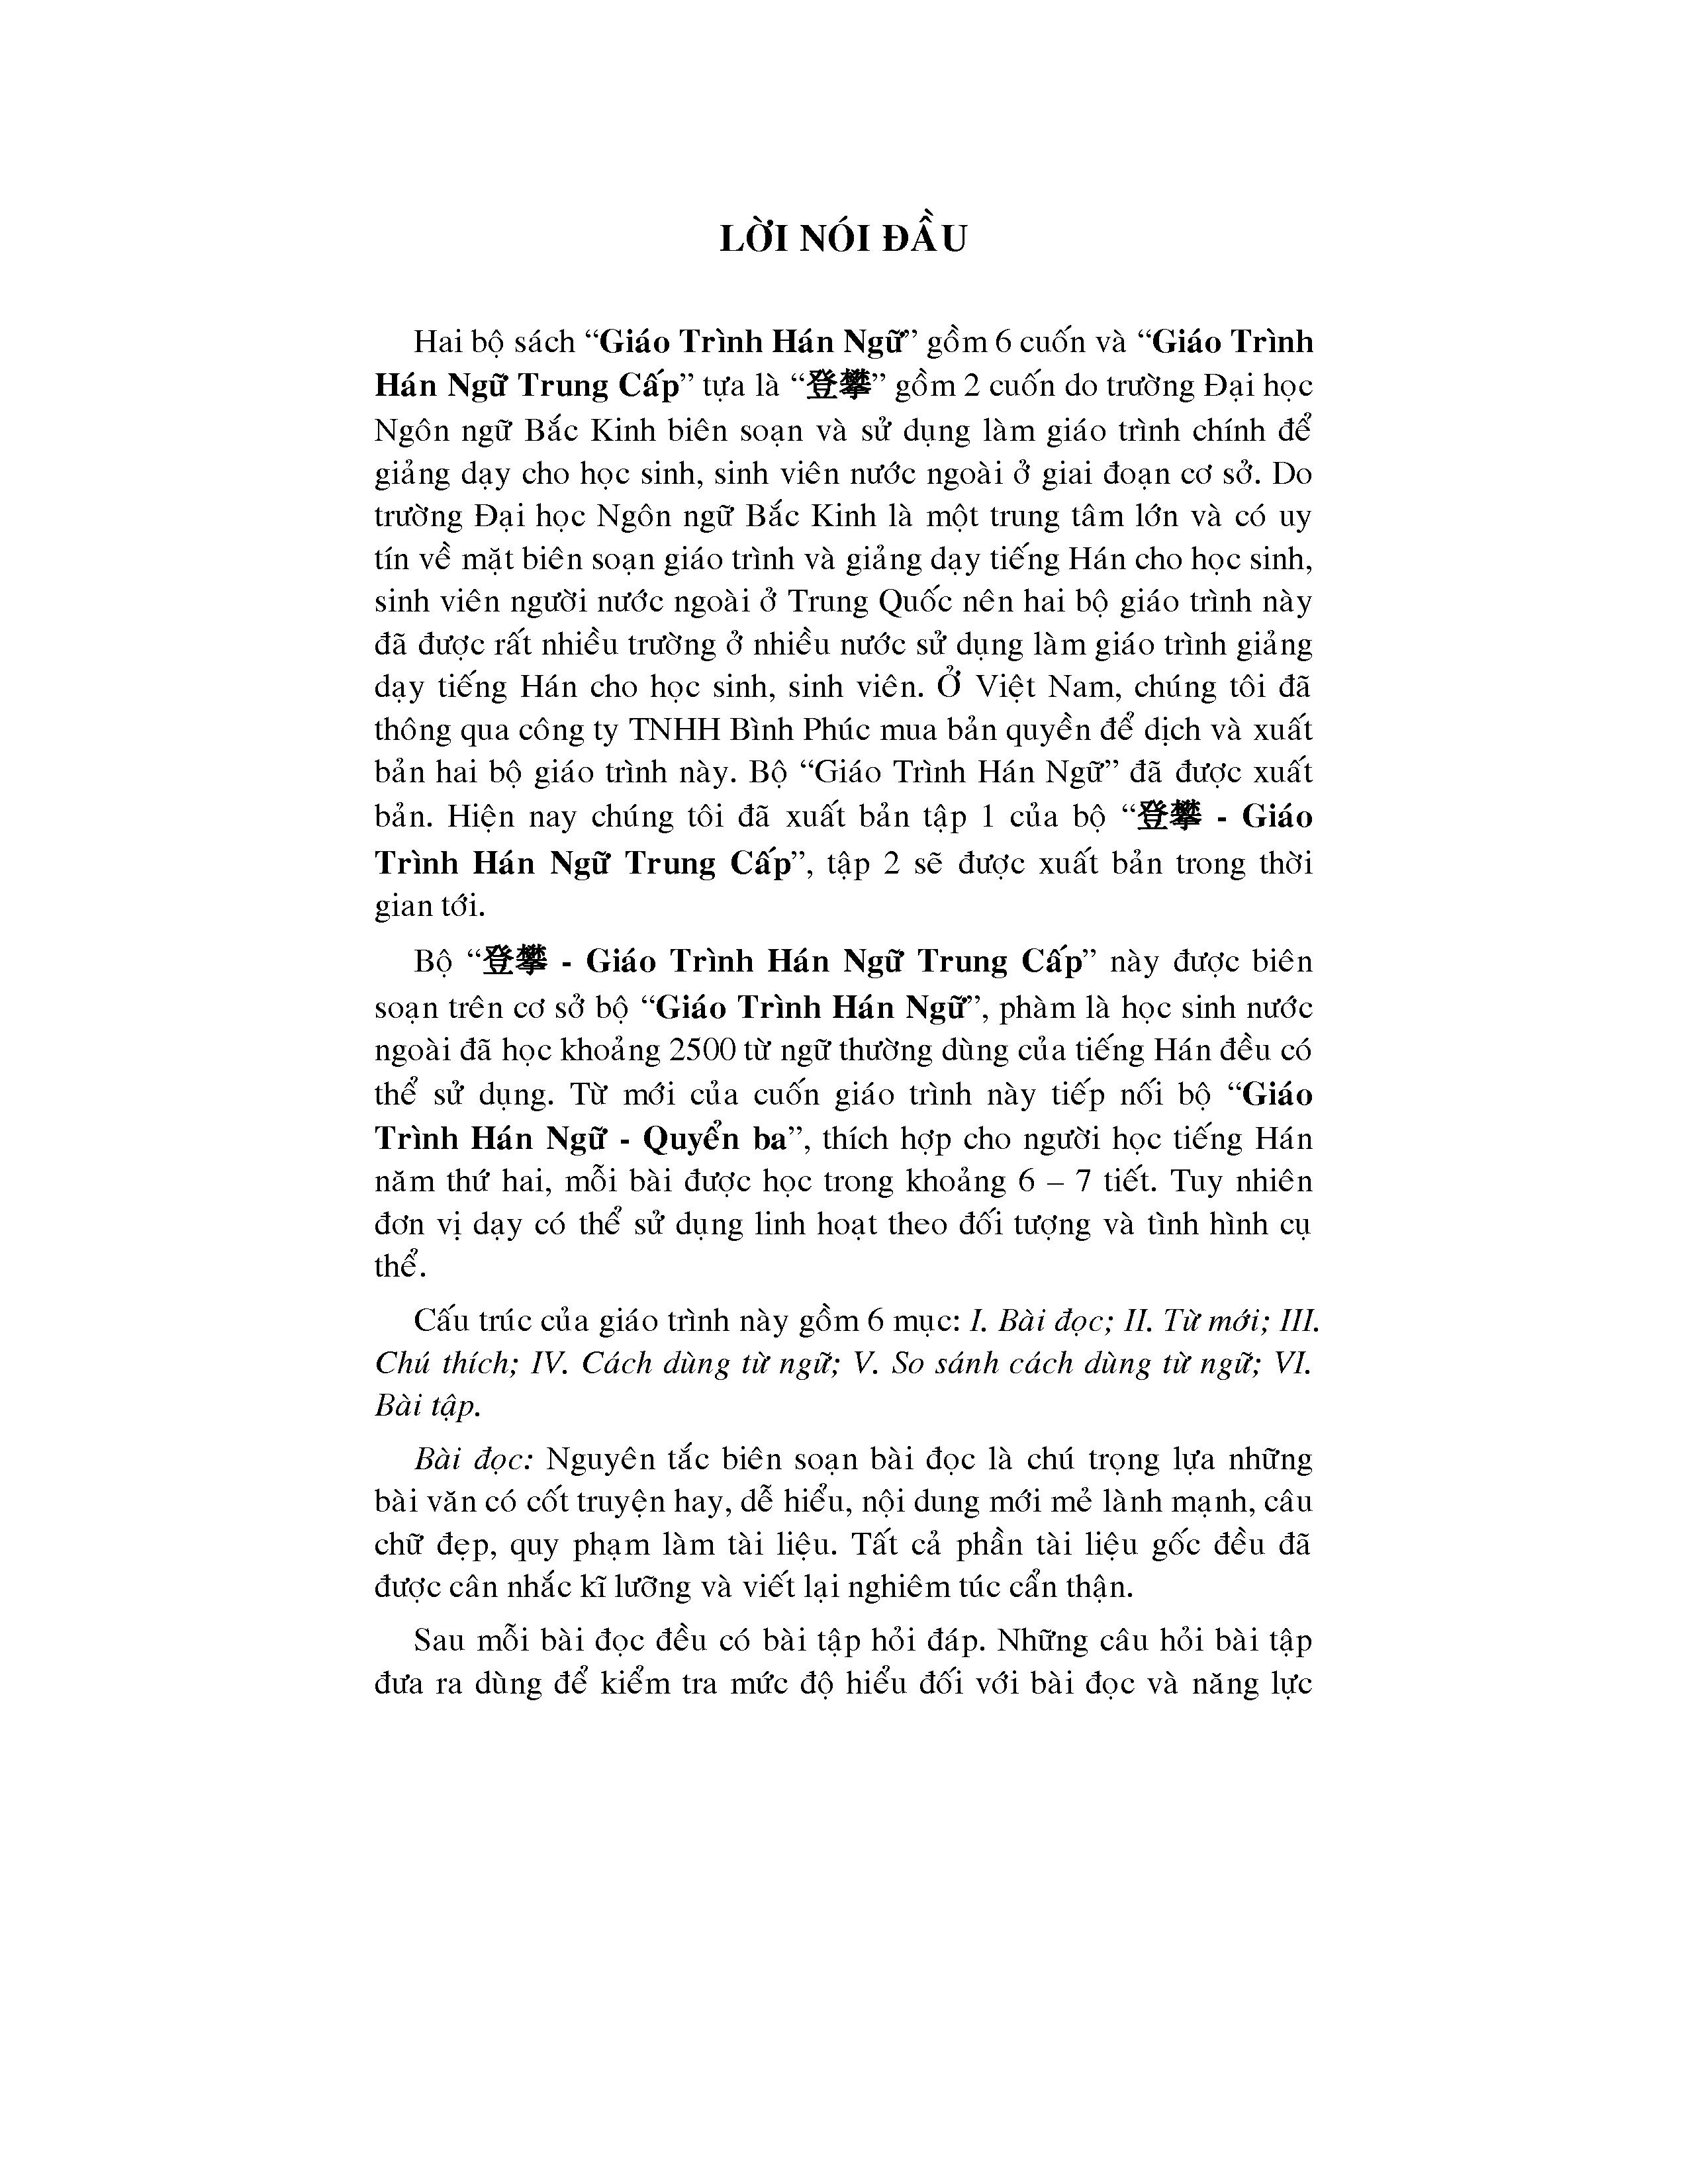 DengPan-Giáo Trình Hán Ngữ Trung Cấp (tập 1)